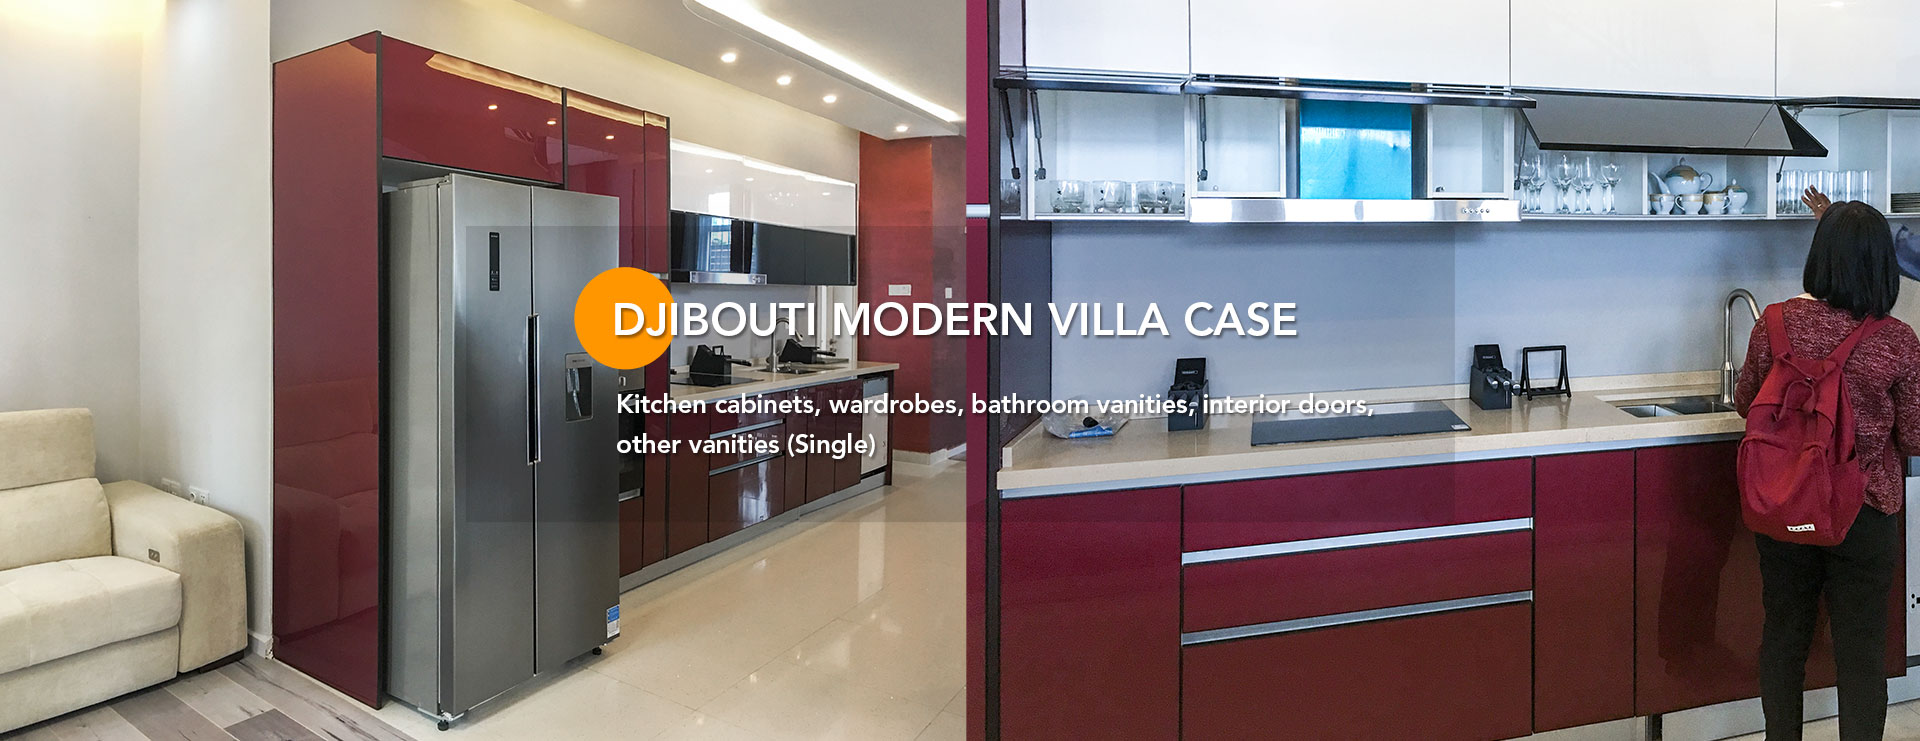 Djibouti-Modern-Villa-Case01-banner